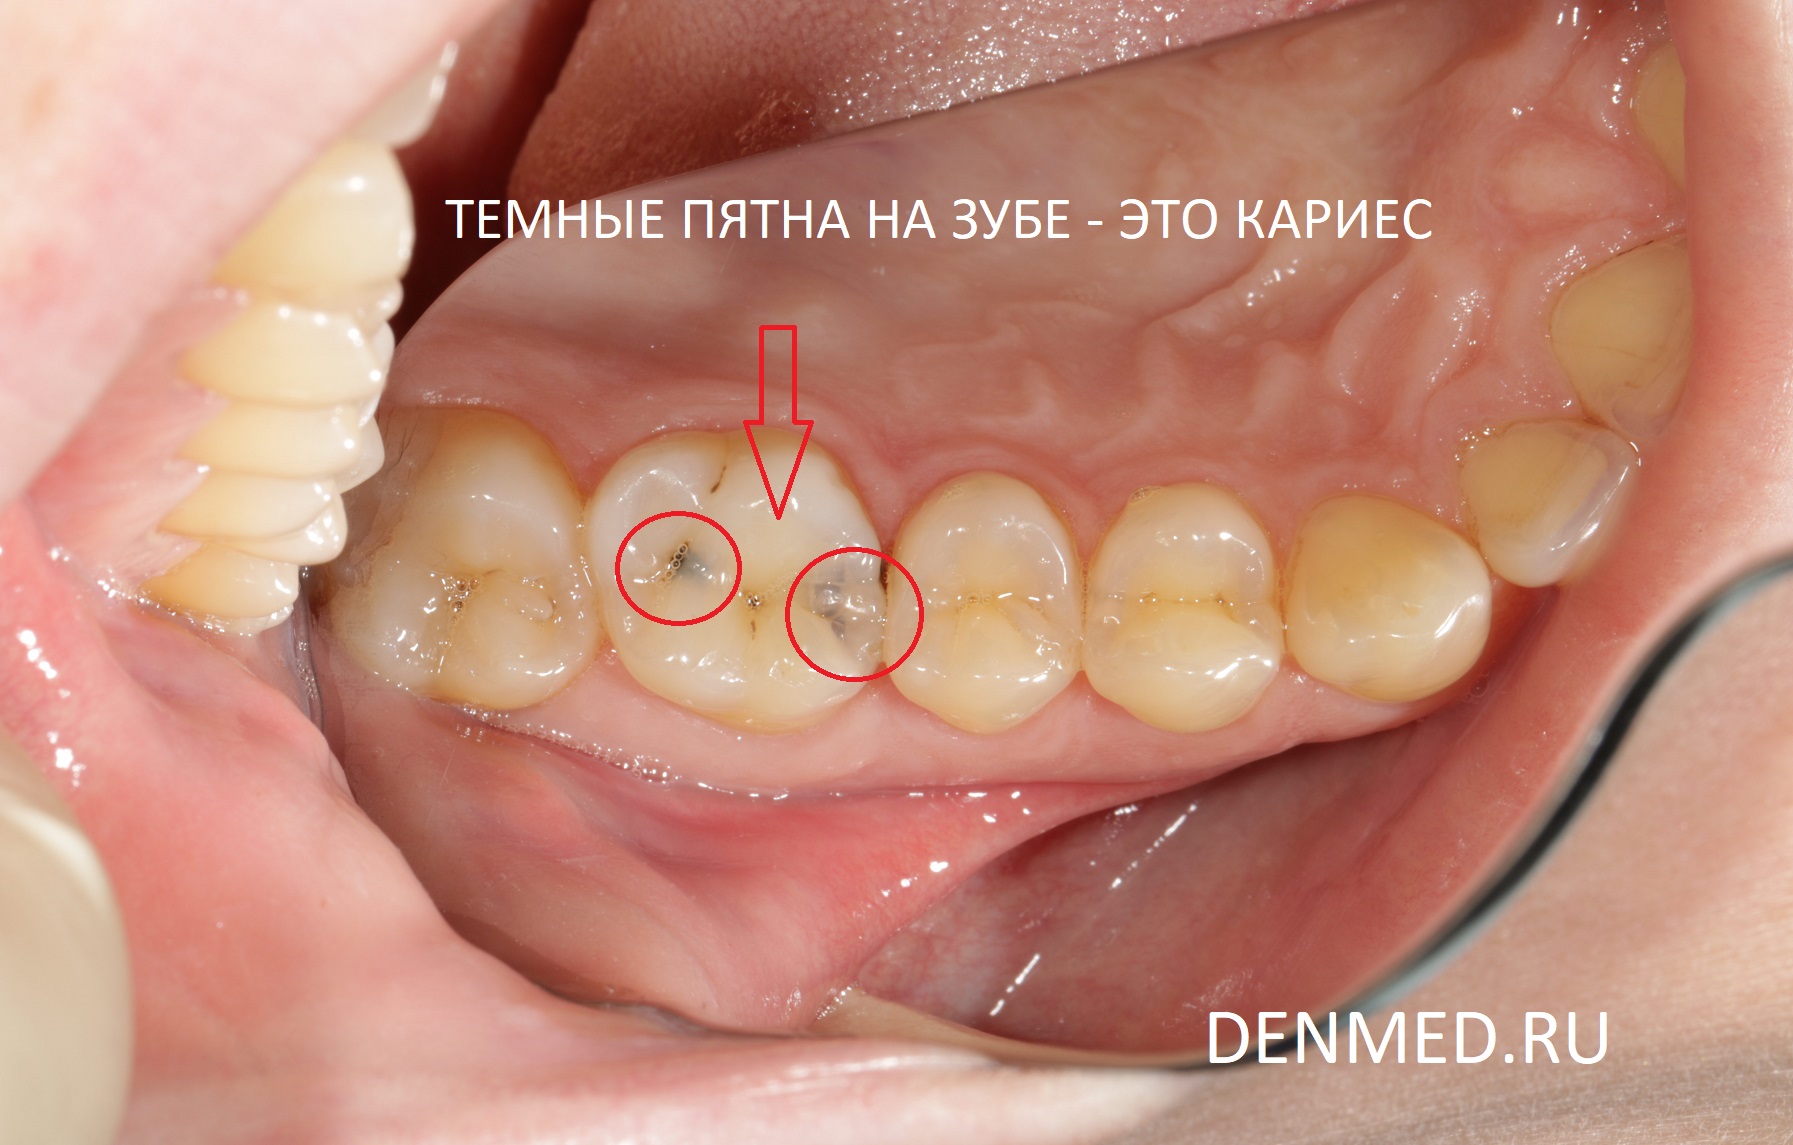 Проблема найдена, вот эти темные пятна на зубе - ничто иное, как тот самый кариес, который возникает от сладкого